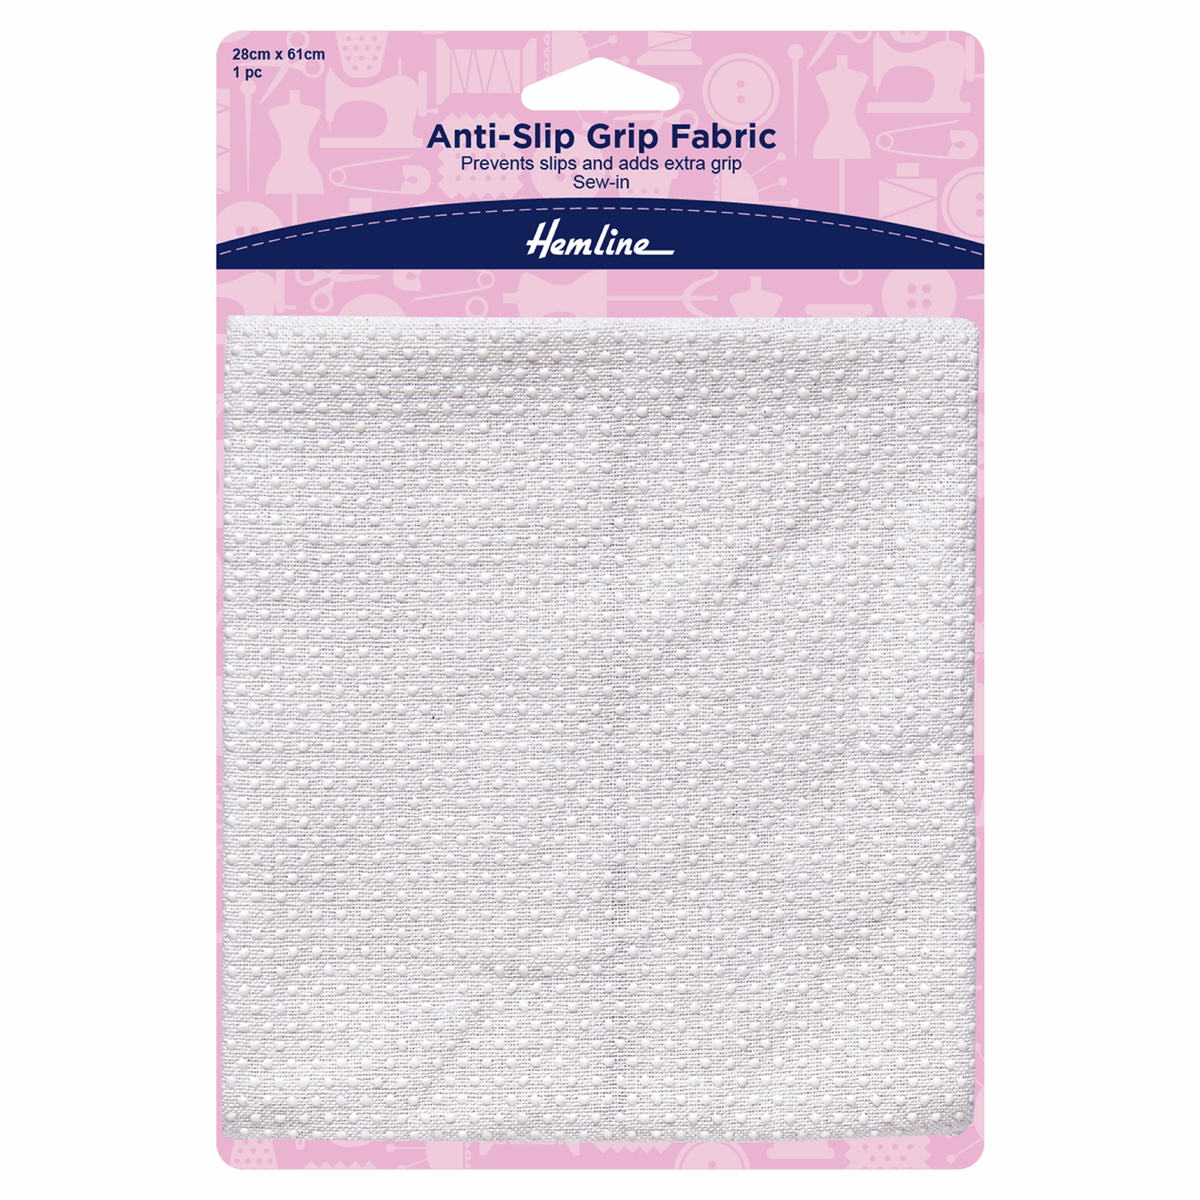 Anti-Slip Grip Fabric Sew-In - 28cm x 61cm